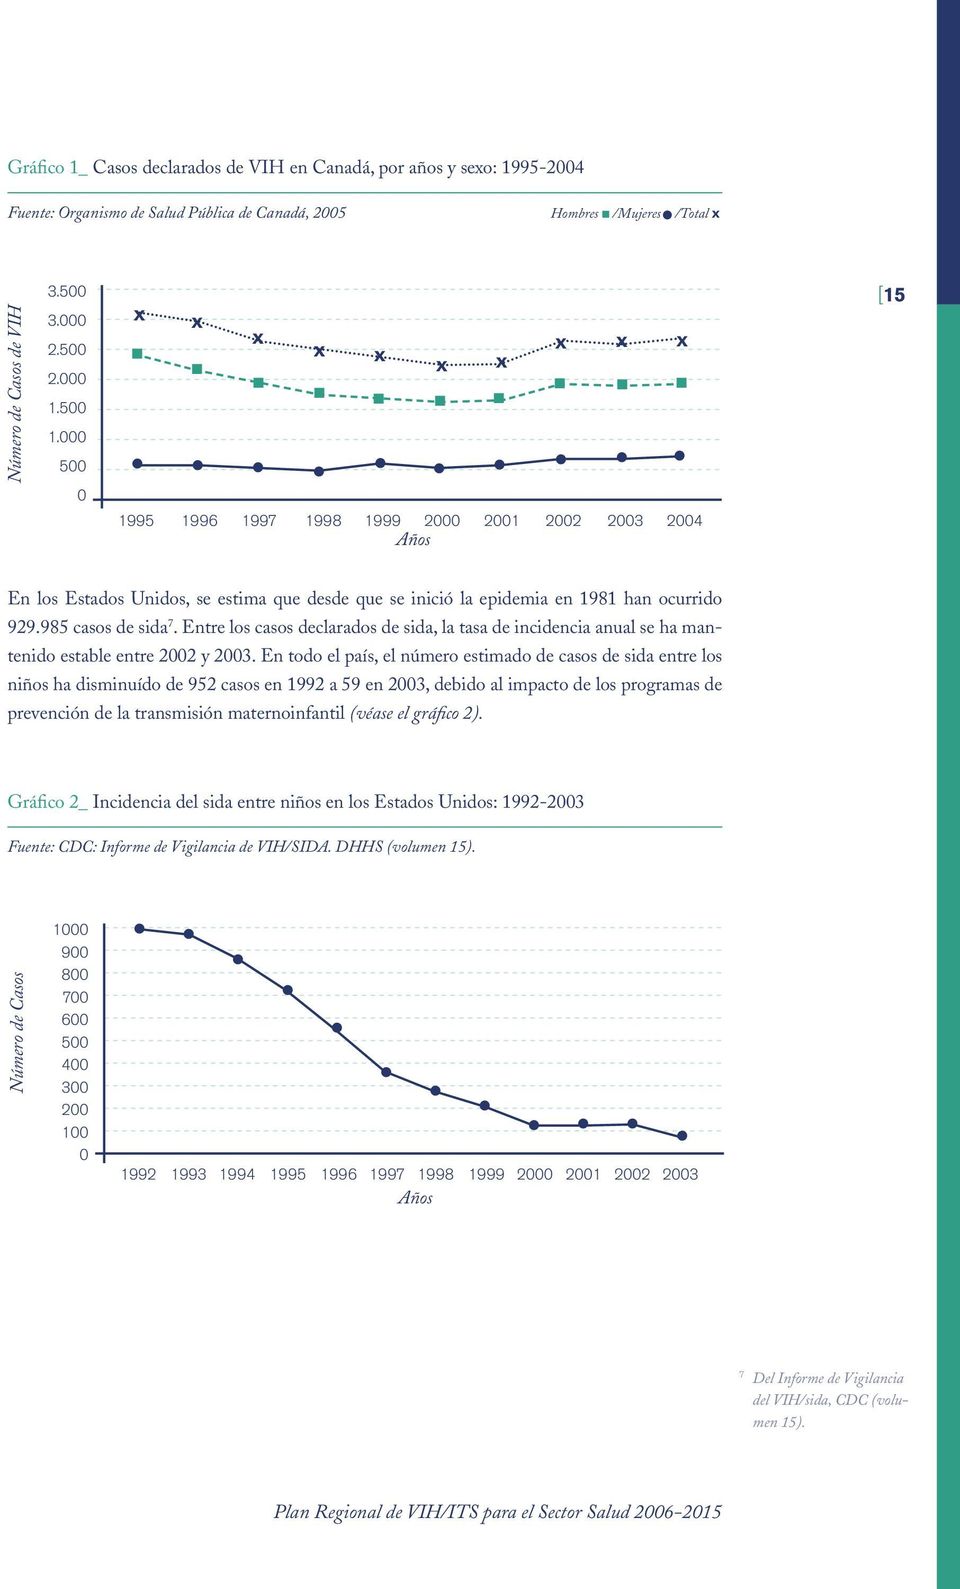 Etre los casos declarados de sida, la tasa de icidecia aual se ha mateido estable etre 2002 y 2003.